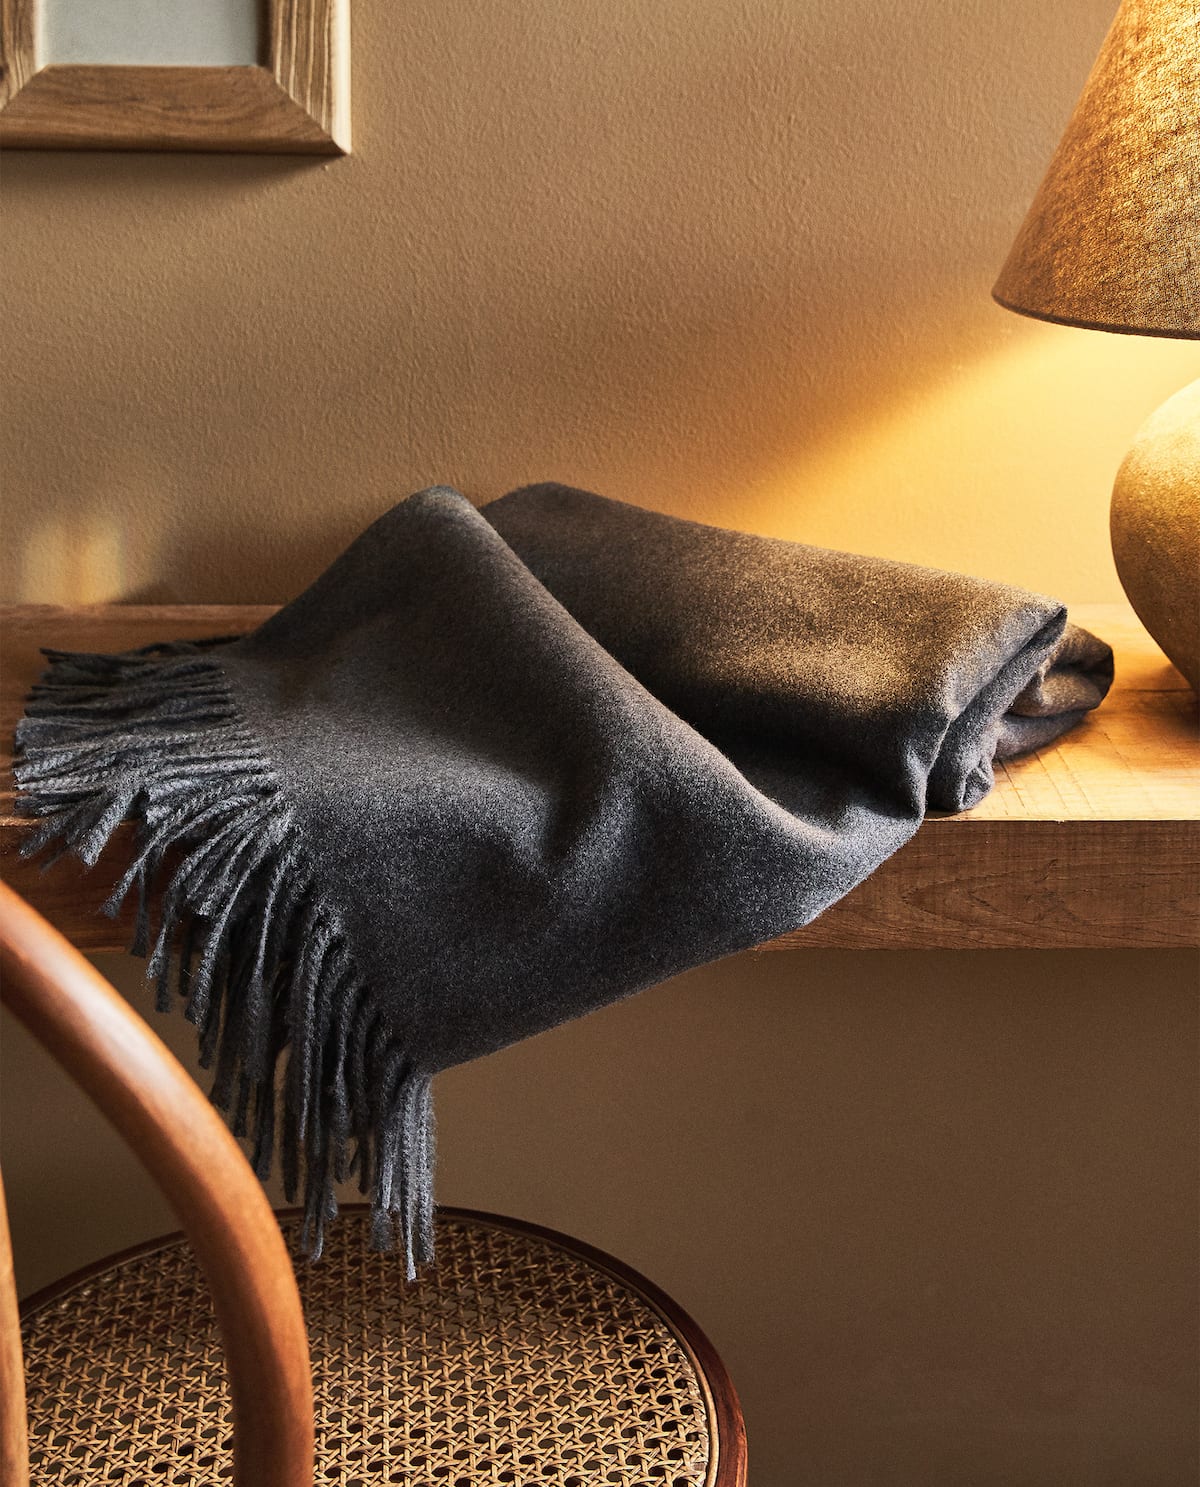 Zara Home: Estas son las mantas para una tarde de sofá y película perfecta